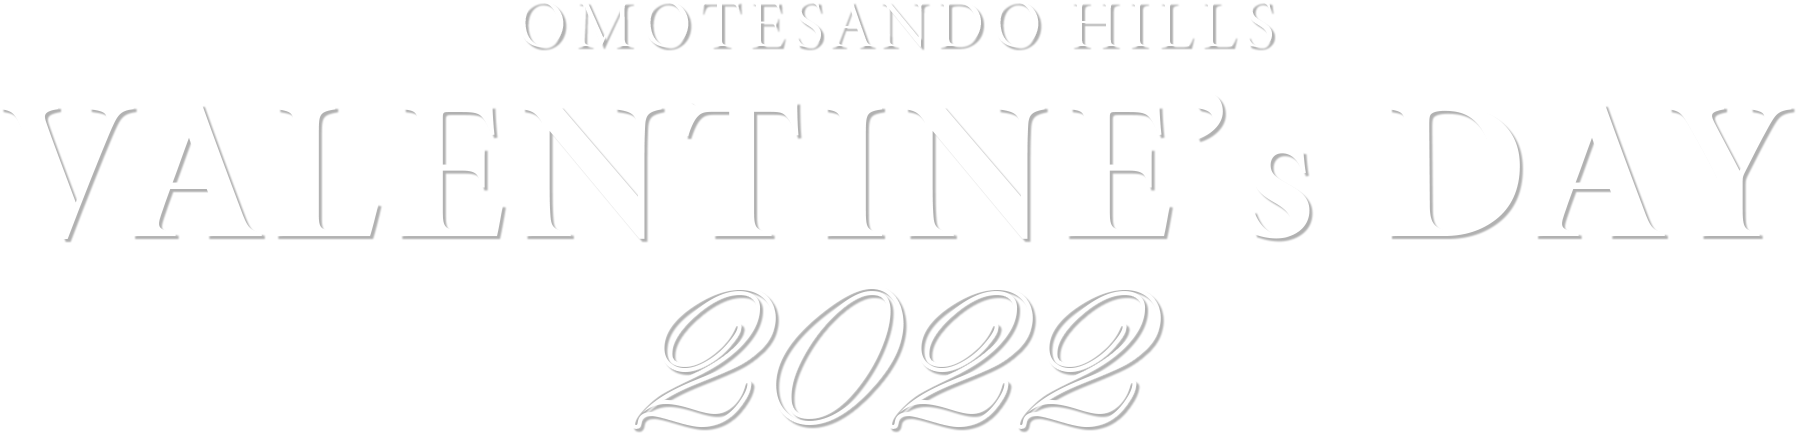 OMOTESANDO HILLS VALENTINE'S DAY 2022